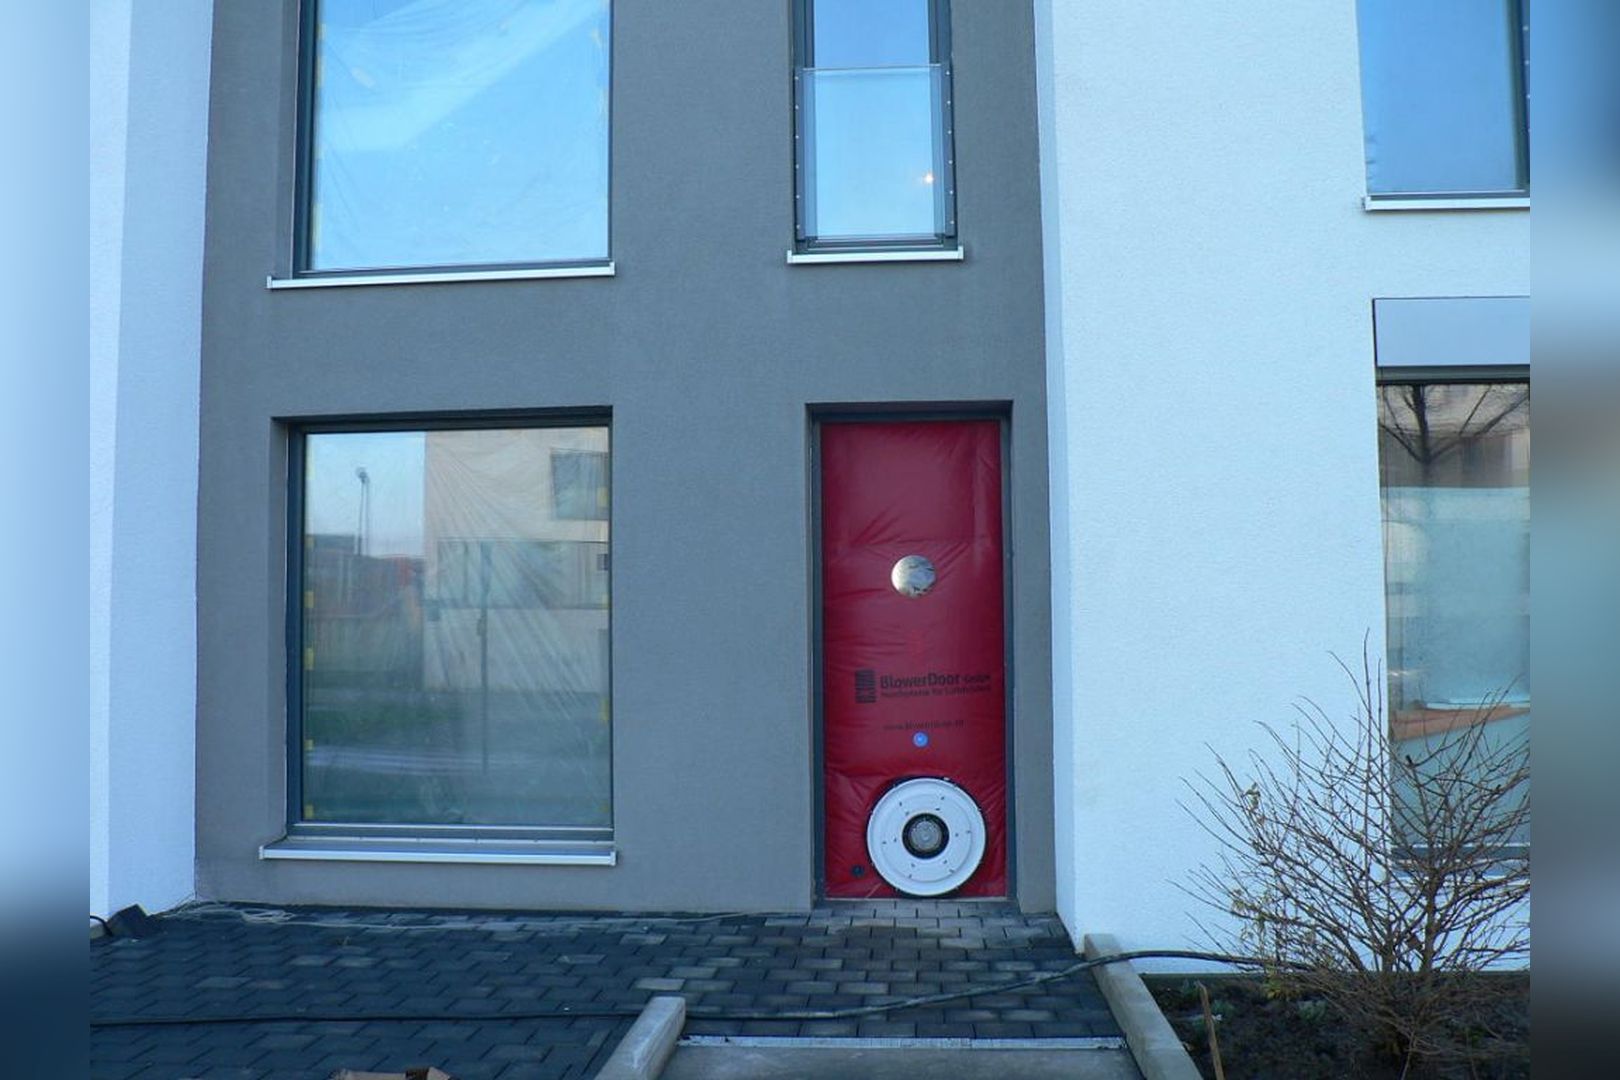 Immobilie Nr.Köln 003.5 - 5-Raum-Wohnung mit Wintergartenküche, 2 Bädern u. großem Balkon  - Bild 9.jpg